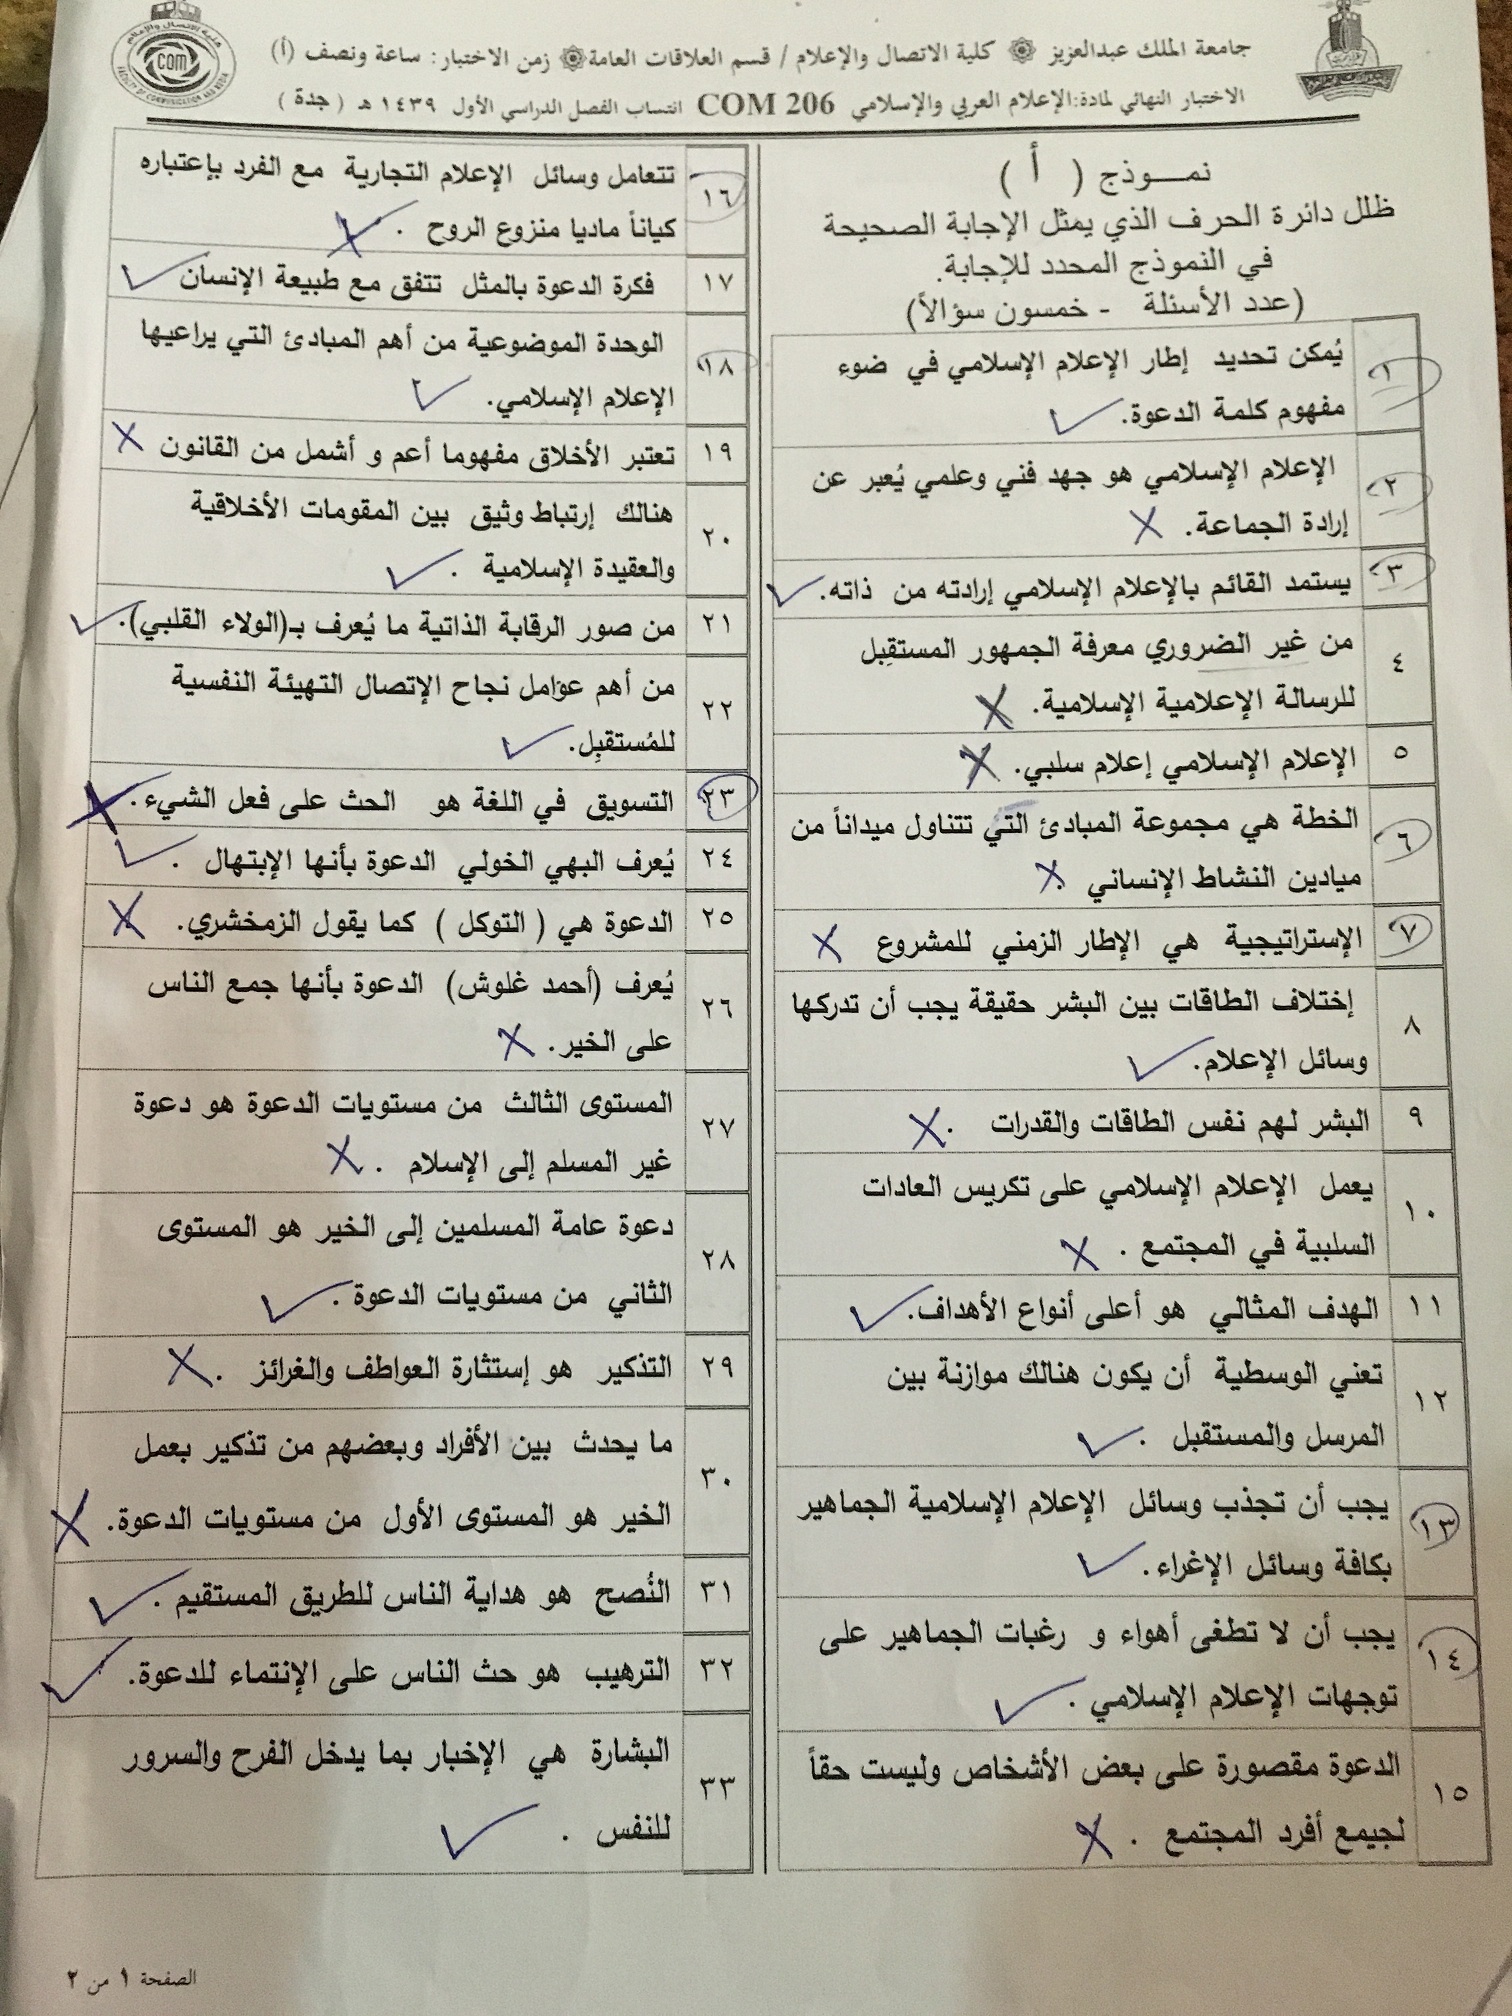 اختبار الإعلام العربي والاسلامي com 206 الفصل الأول 1439هـ